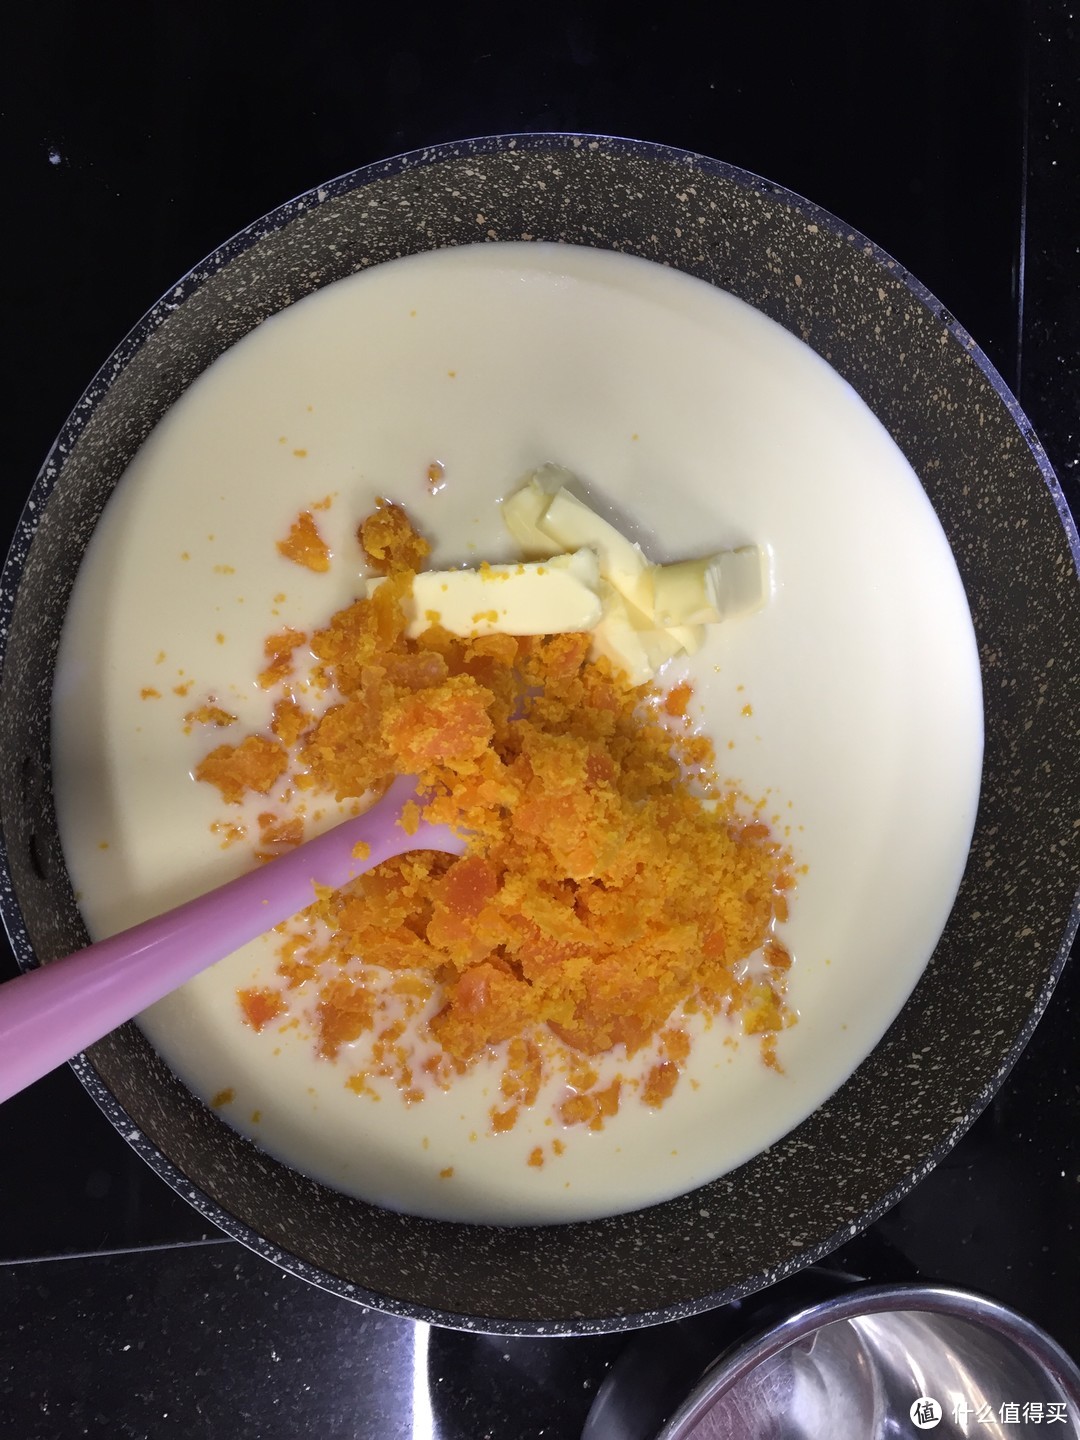 混合液体倒入平底锅中加入咸蛋黄末（可以过筛提高细腻度）和黄油，小火翻拌